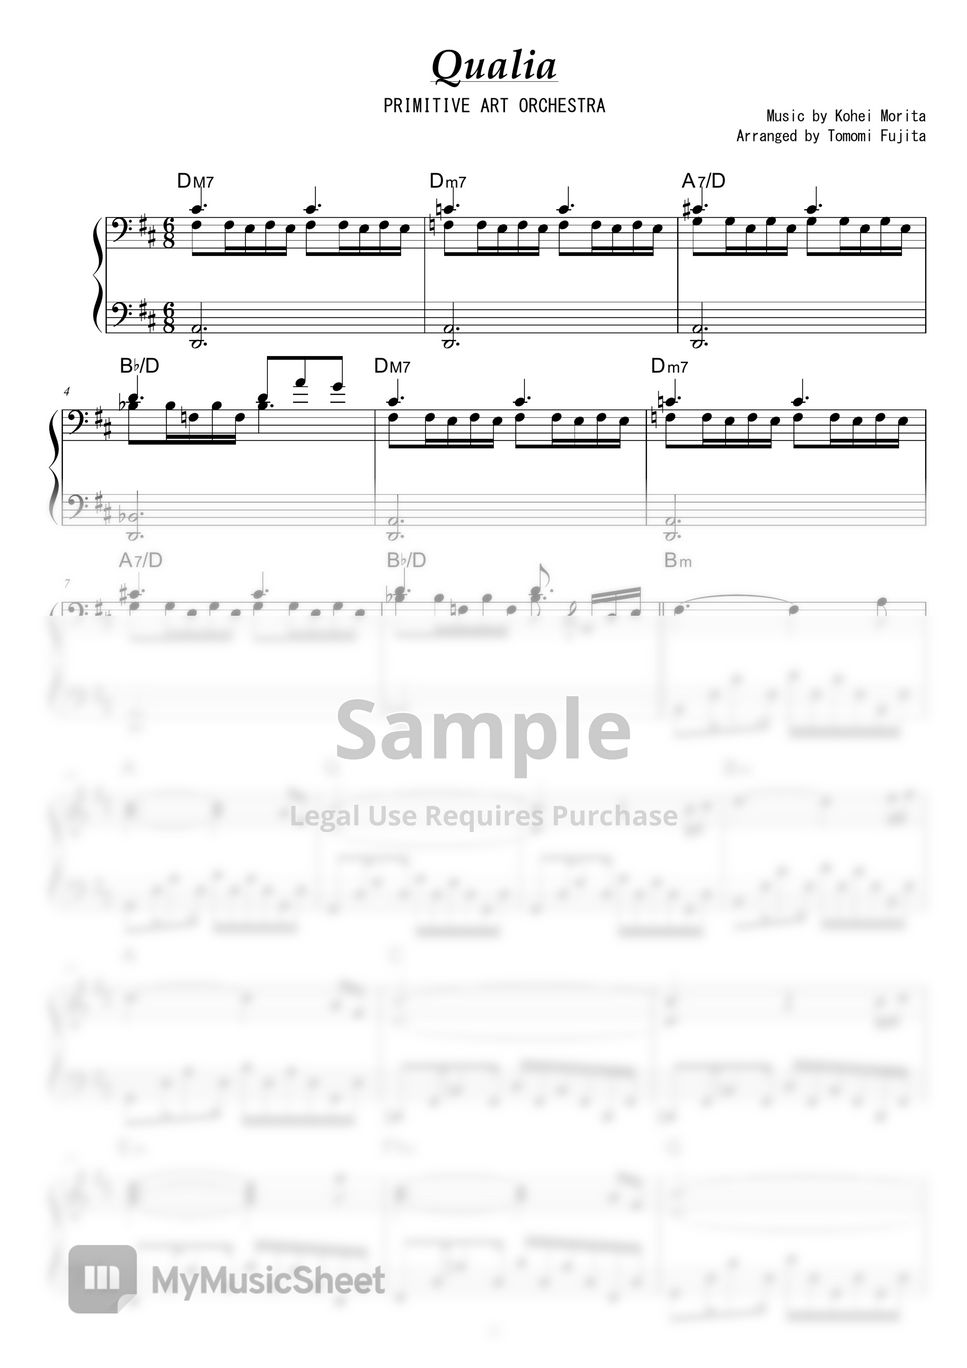 PRIMITIVE ART ORCHESTRA - Qualia by piano*score